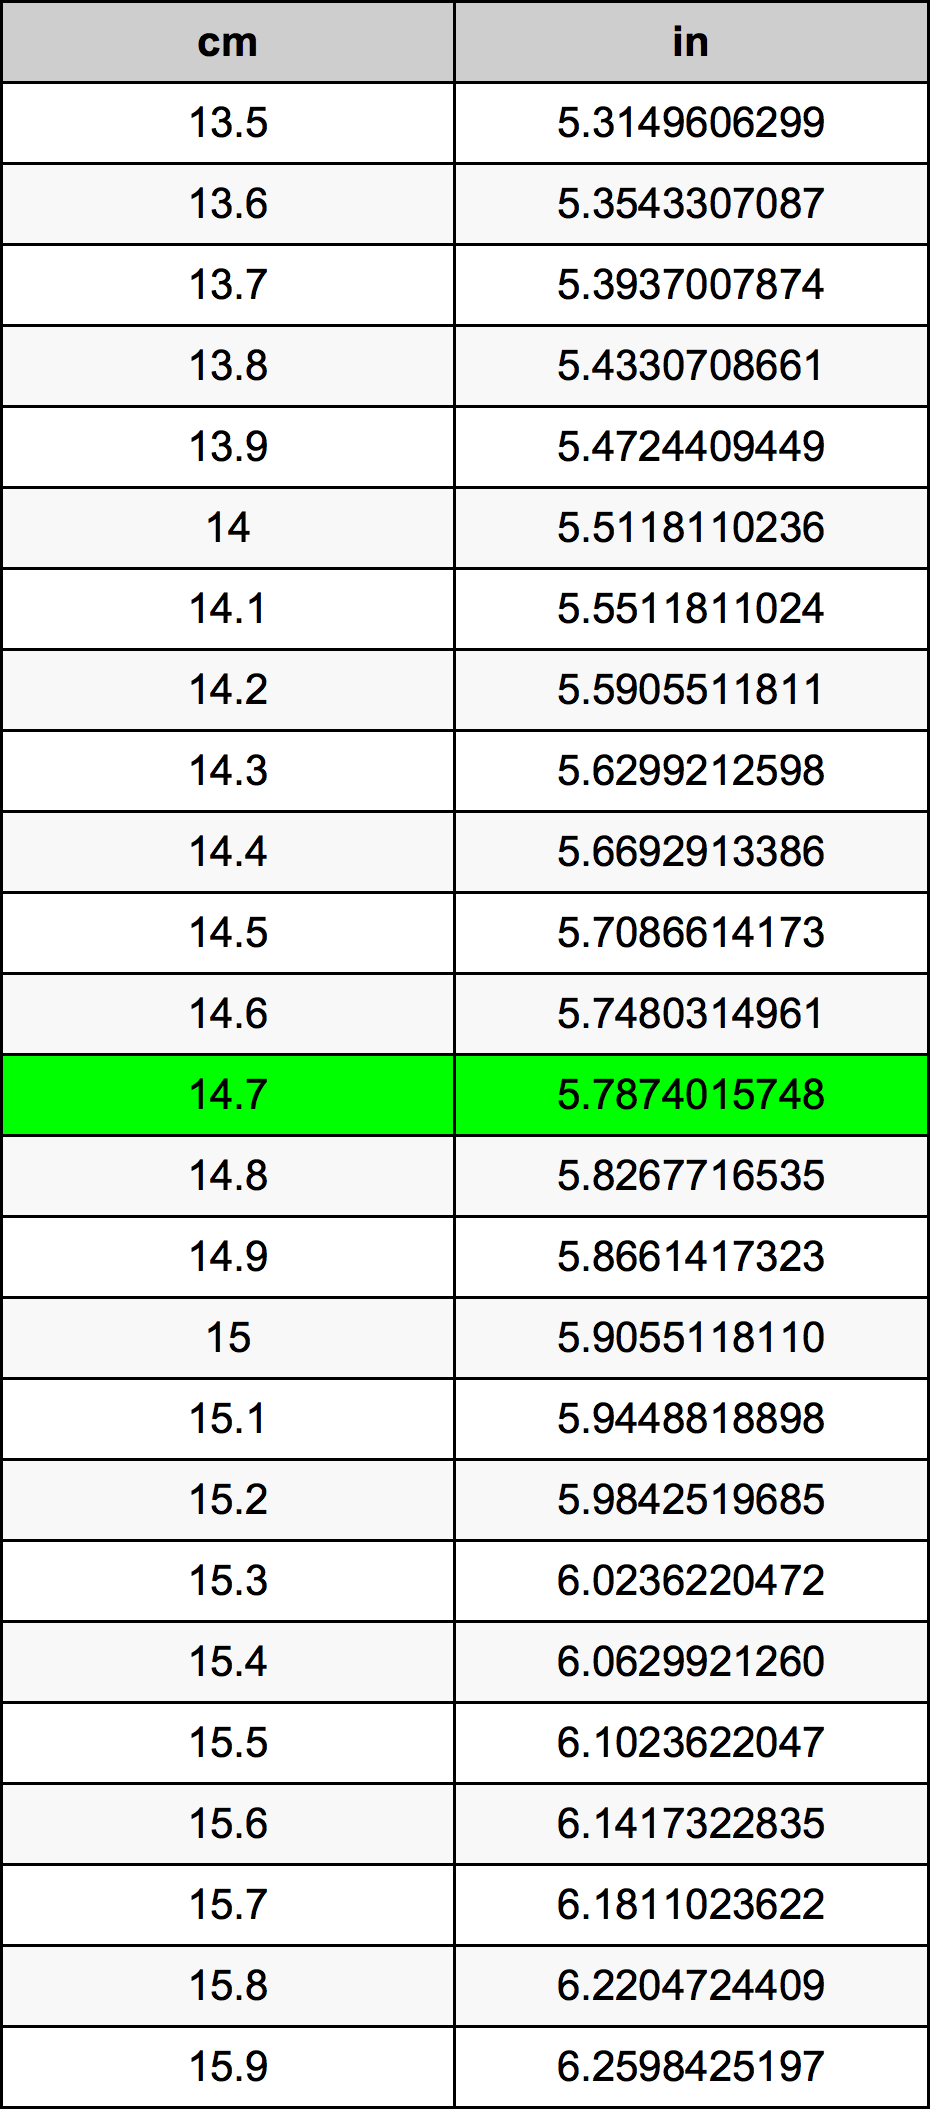 14.7 Centiméter átszámítási táblázat